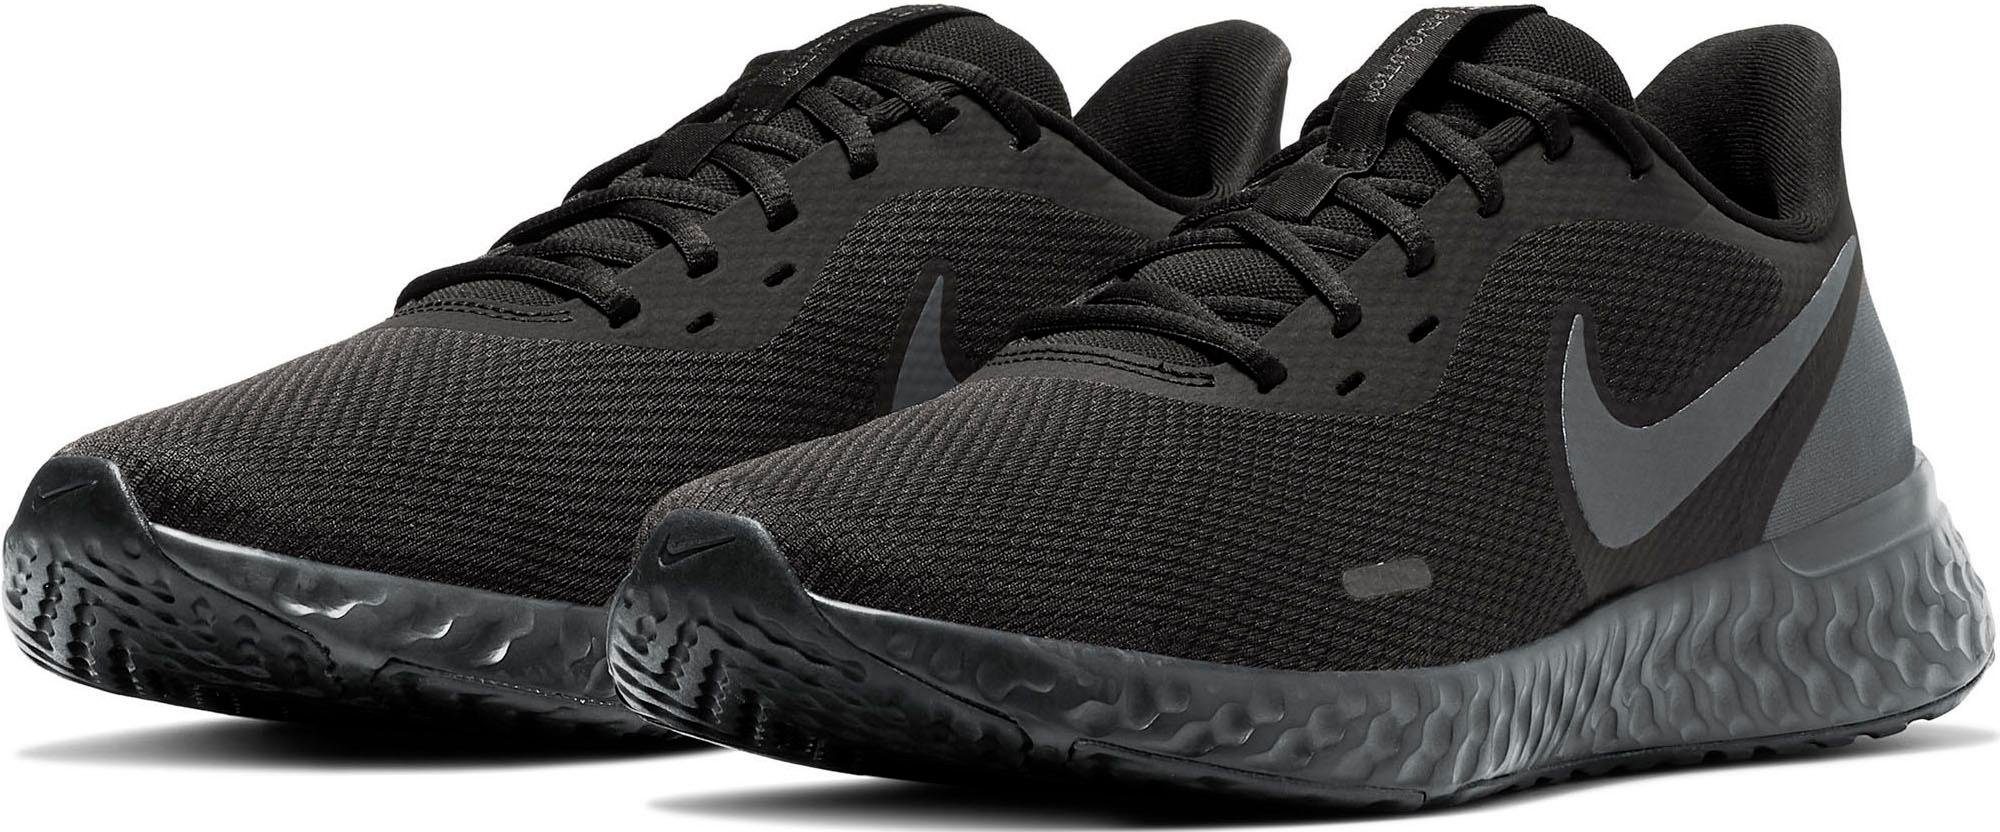 Schwarze Nike Herrenschuhe online kaufen | OTTO